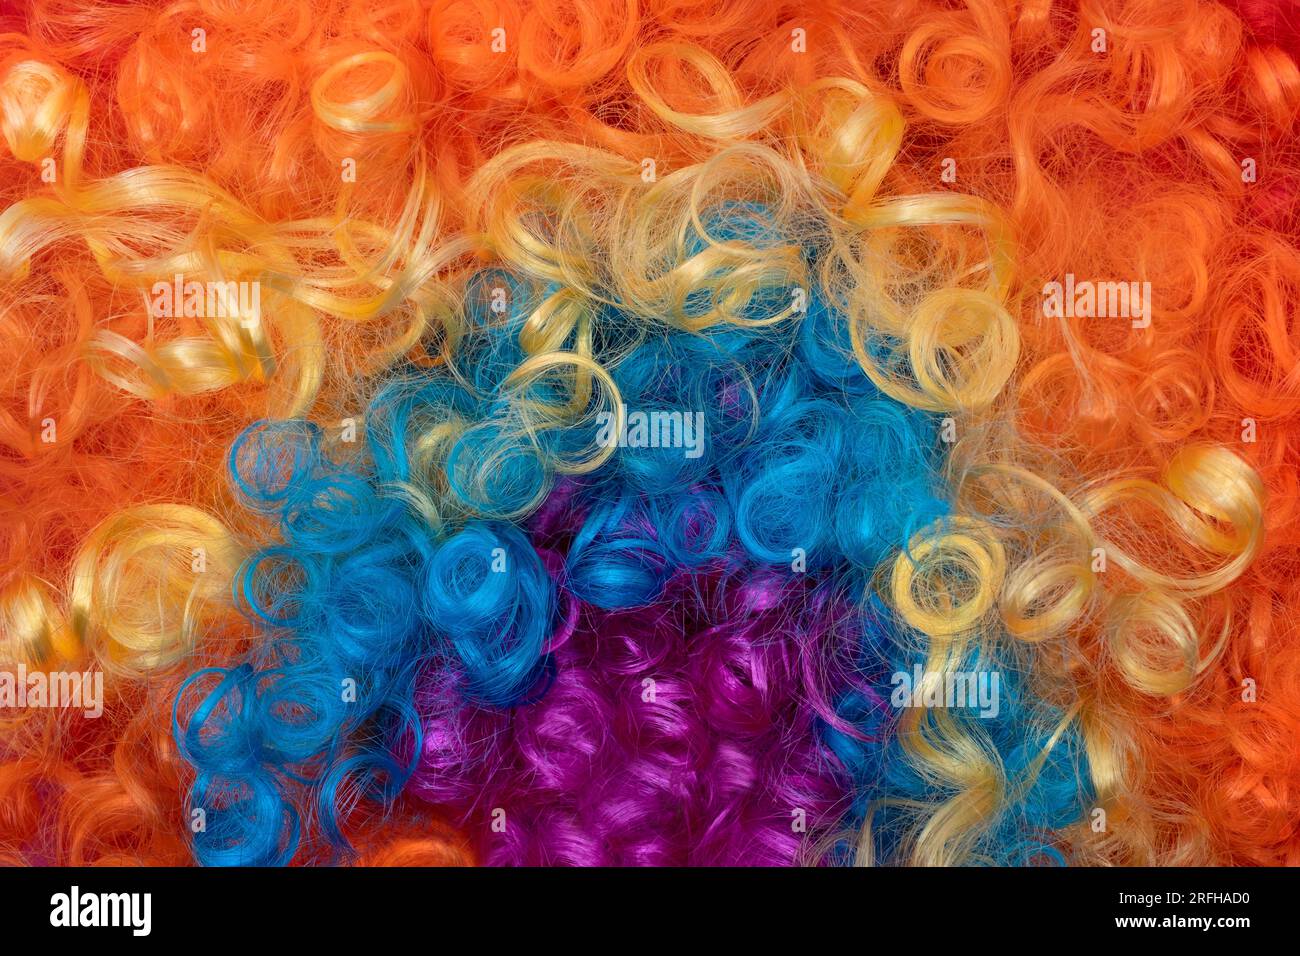 Lustige Party Konzept Regenbogen Clown Perücke flauschig Synthetisch Cosplay Anime Fancy Wigs Festliche Purim Stockfoto